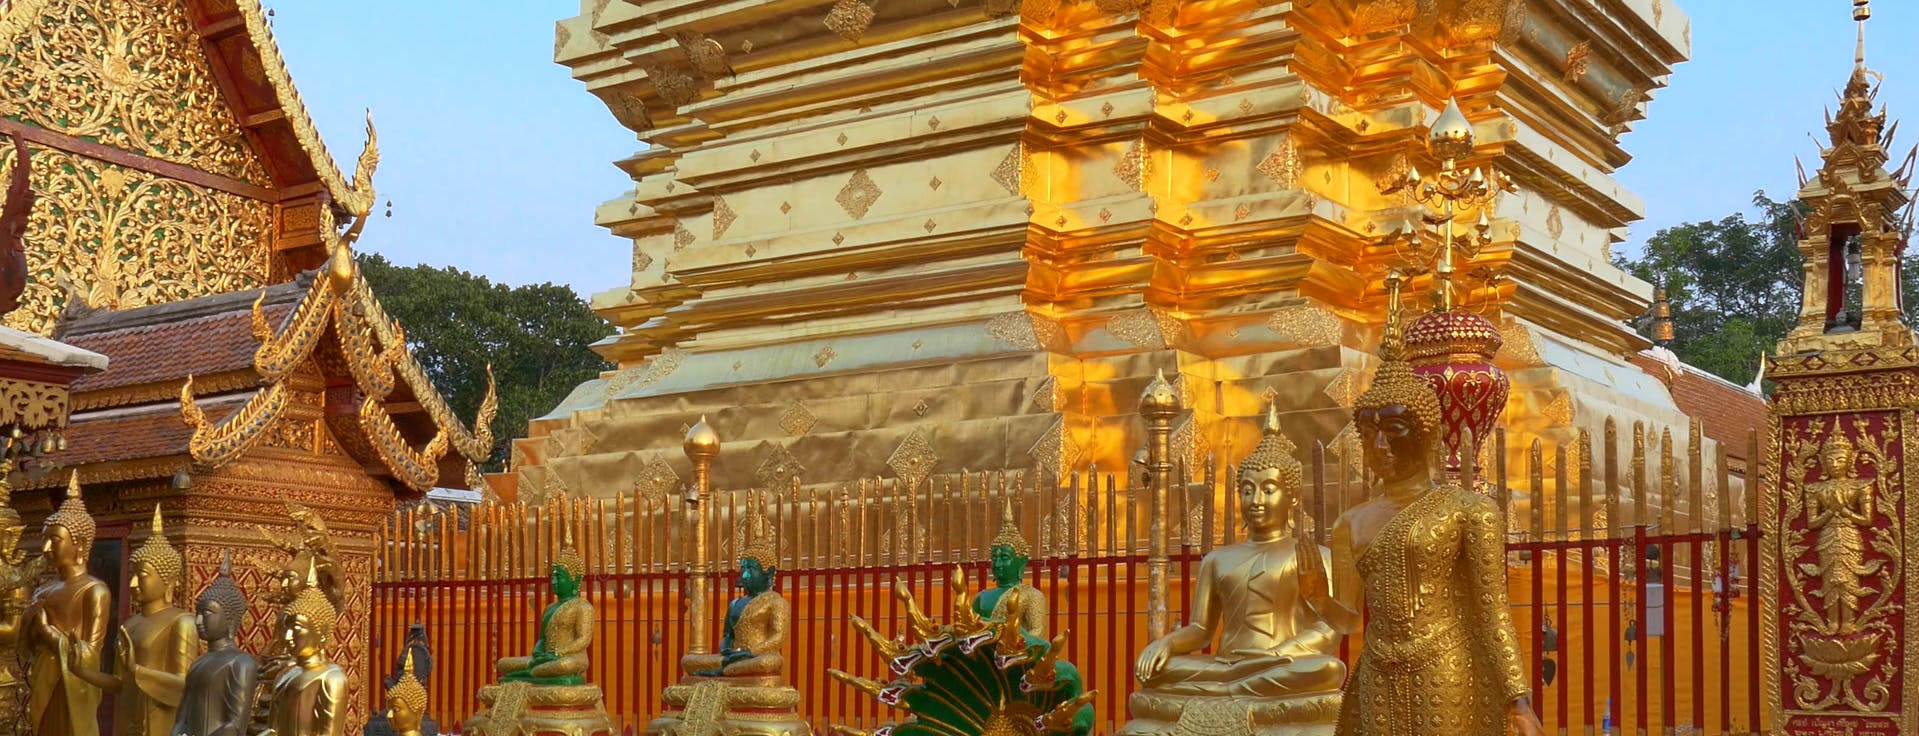 Recorrido por la ciudad y los templos de Chiang Mai